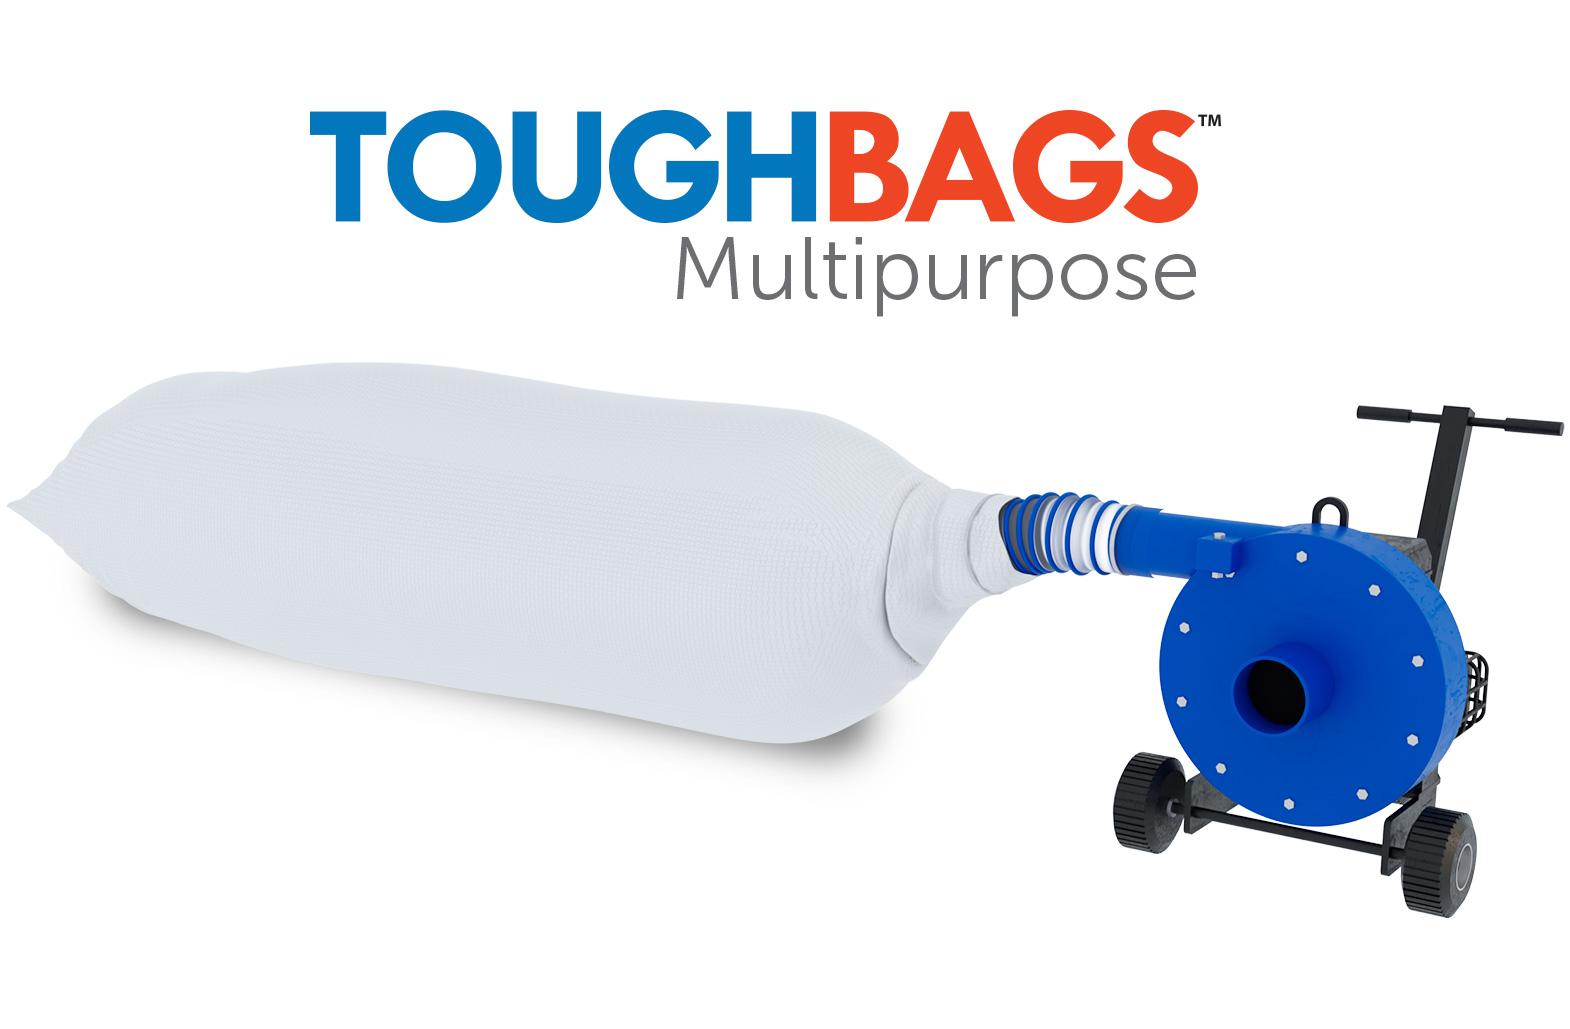 https://www.toughbags.com/images/tough-bags-multipurpose-removal-bag.jpg